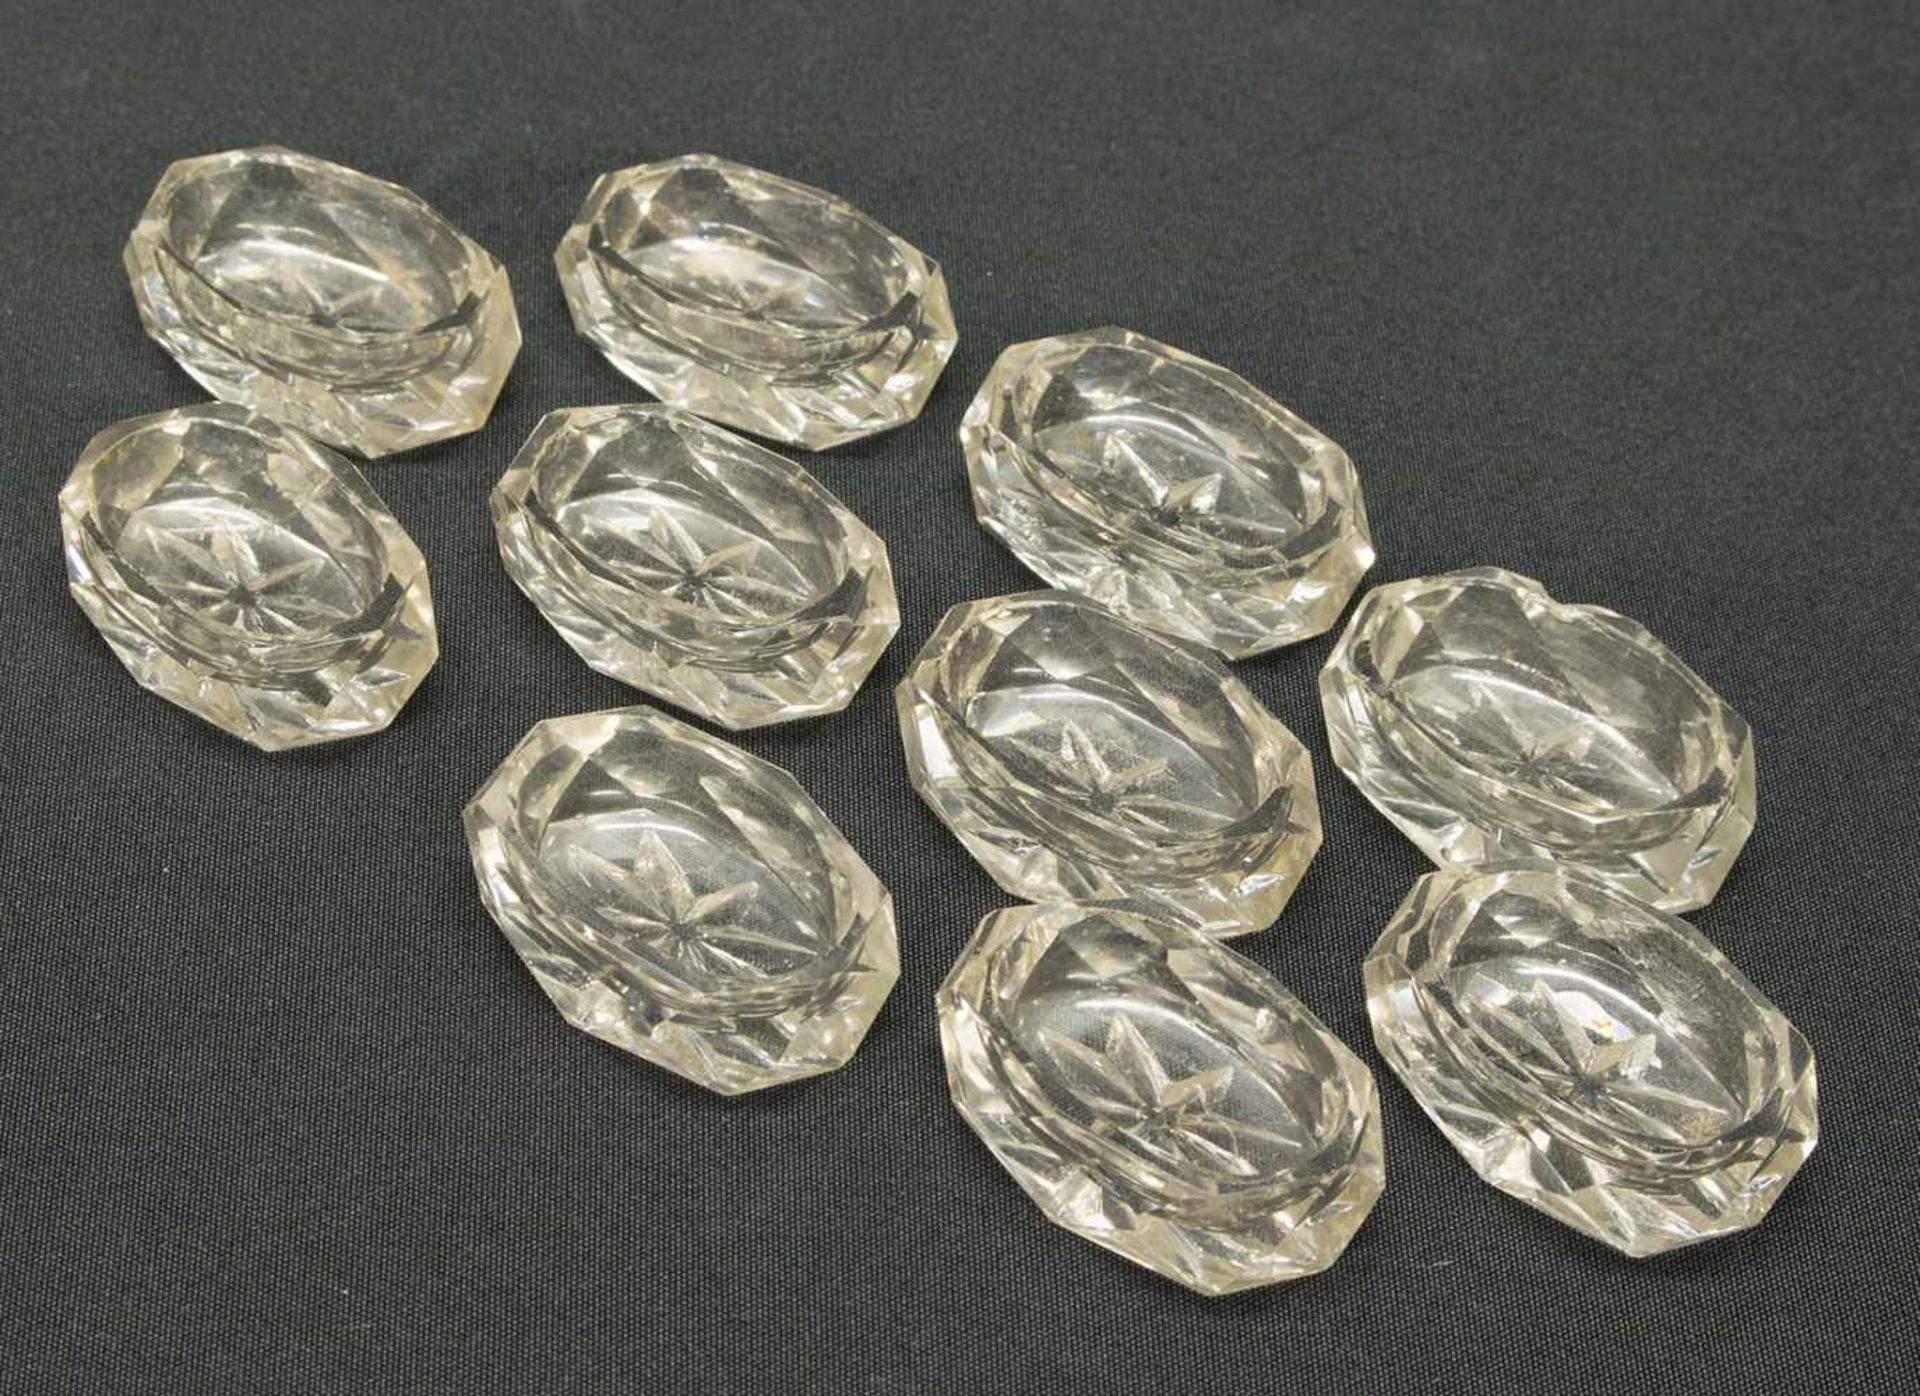 10 GewürznäpfeKristallglas, geschliffen, 4 x 2,8 cm